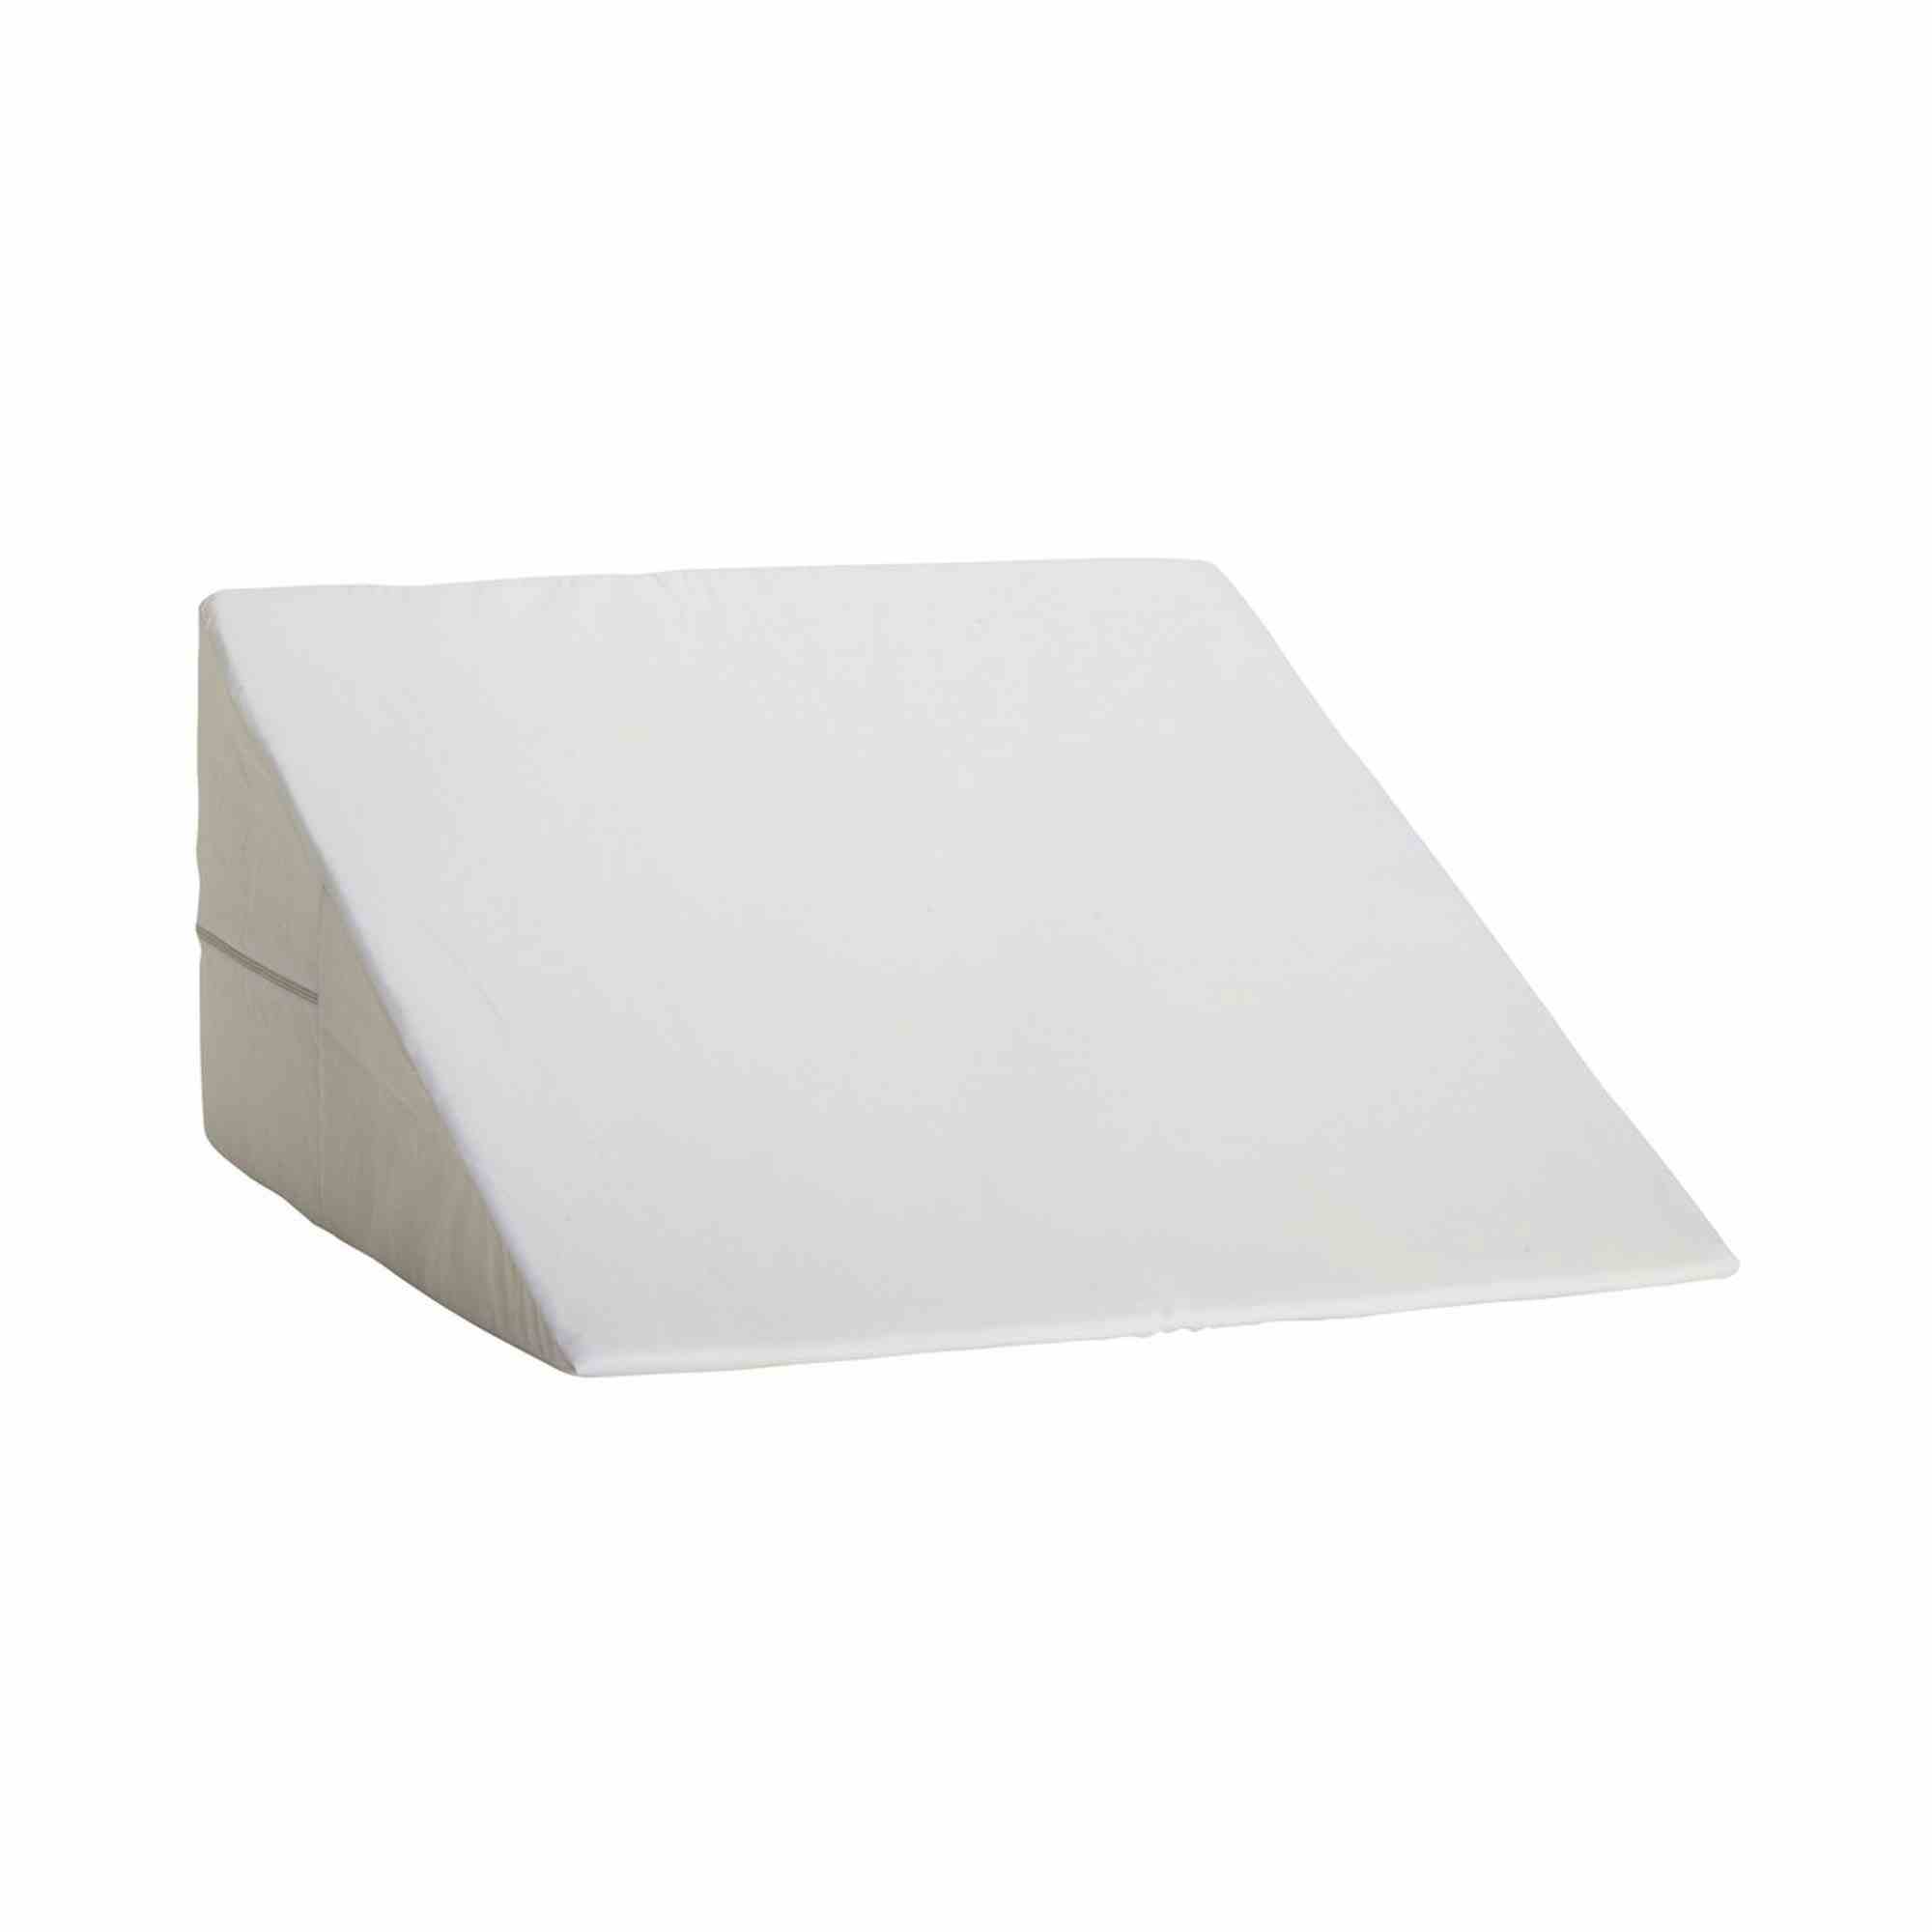 DMI Foam Bed Wedge, 802-8027-1900, 24 X 24 X 10" - White - 1 Each